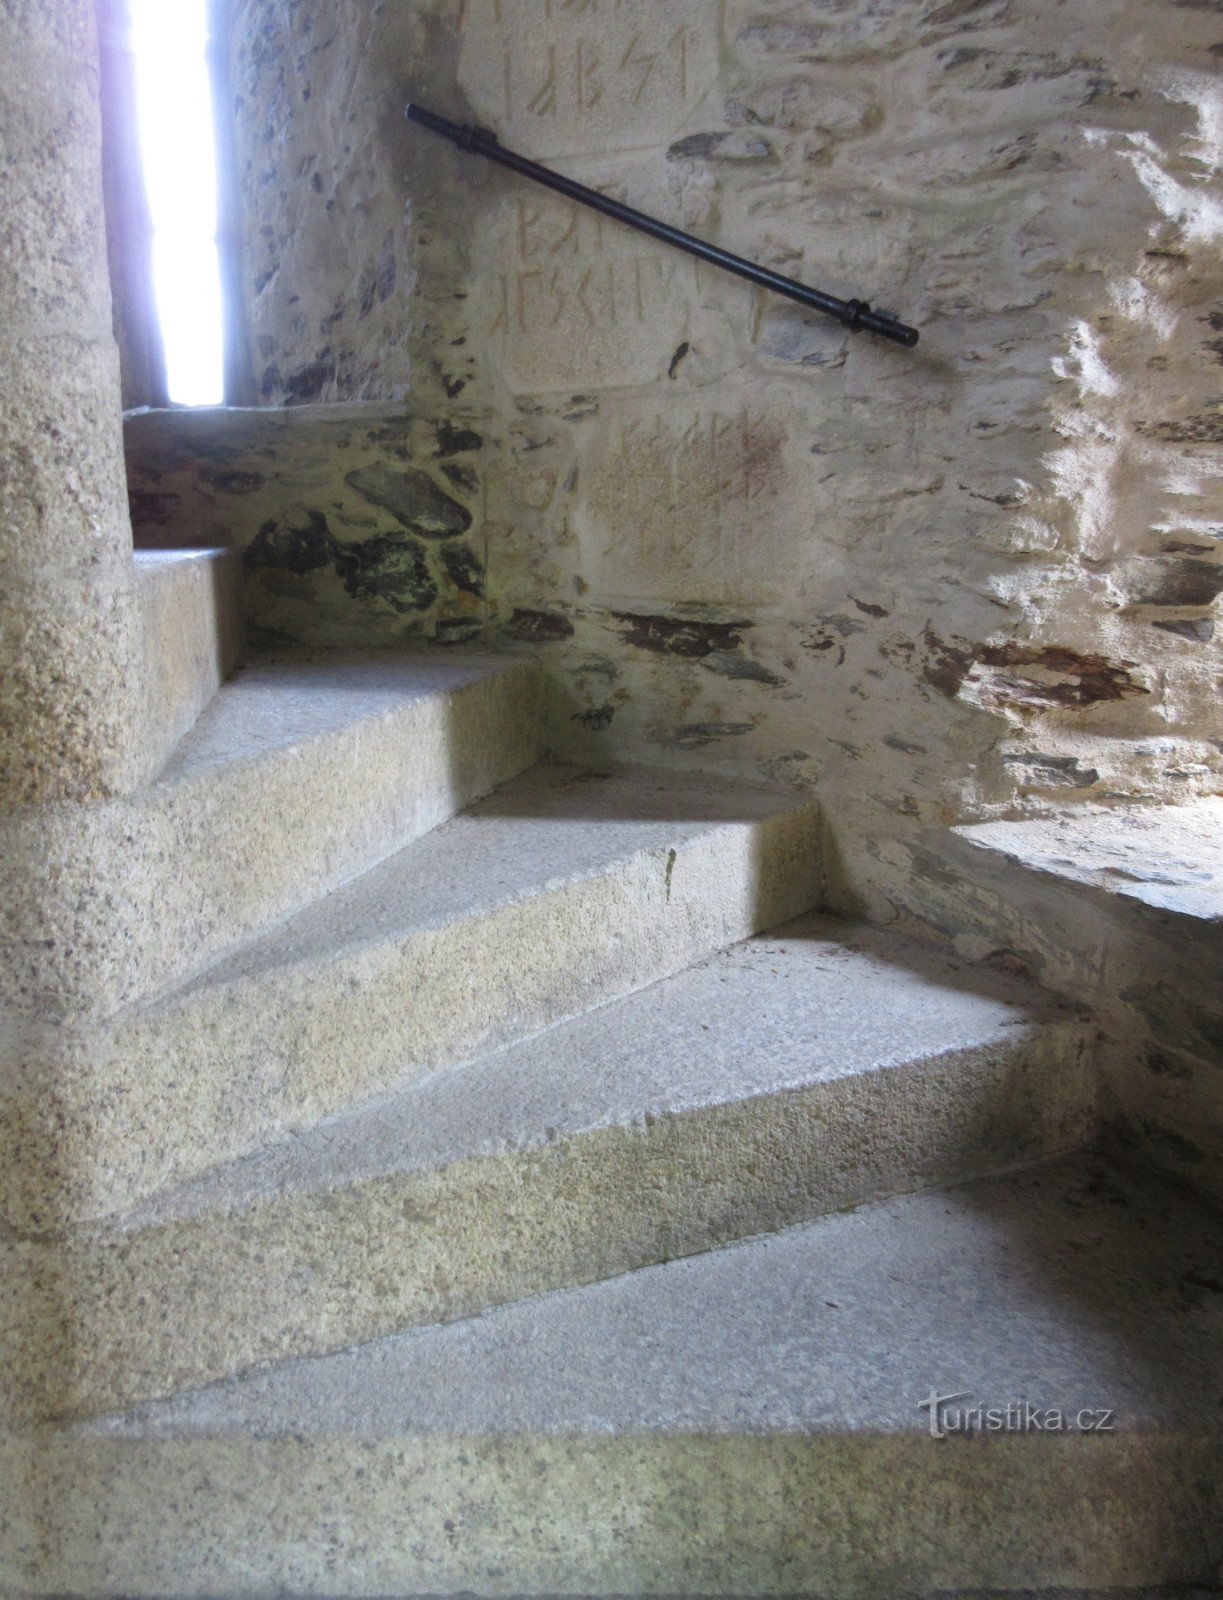 Escaliers vers la tour de guet